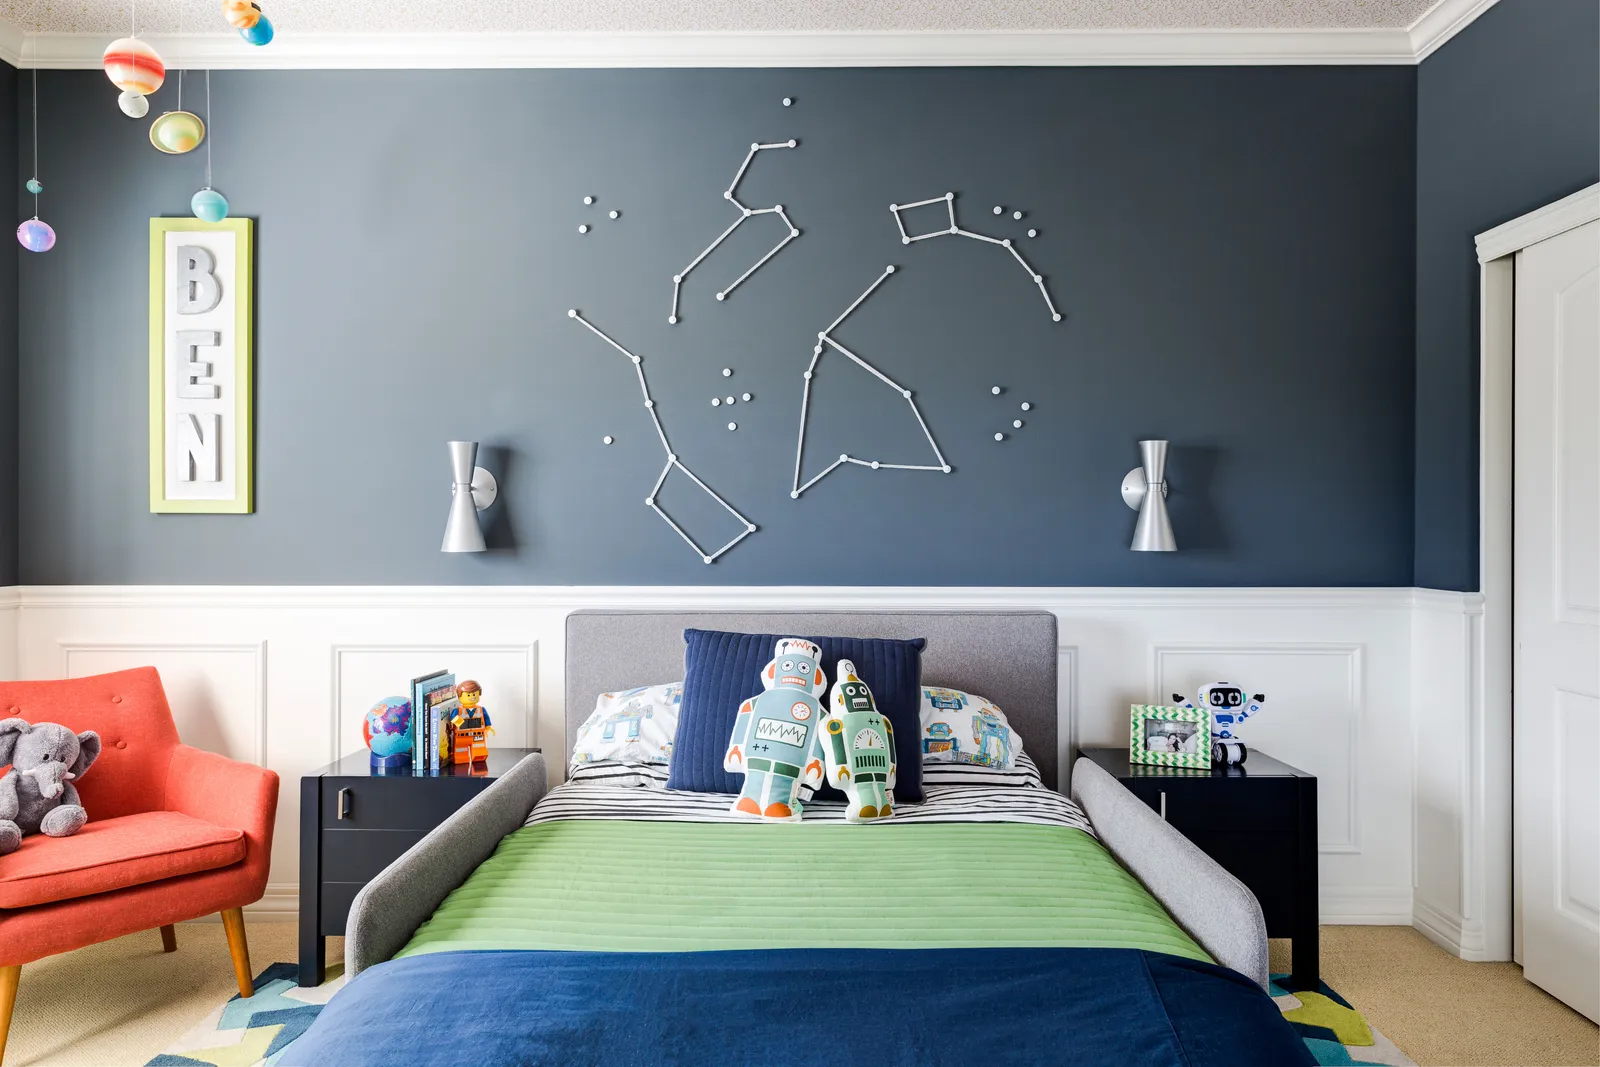 Nếu bạn và thành viên nhí đều yêu thích các chòm sao, vũ trụ... tại sao bạn không thử mang chúng lên tường phòng ngủ. Thiết kế này khá đơn giản, bạn chỉ cần dùng bông gòn (vải trắng) và băng keo rồi dán chúng lên tường đã sơn màu phù hợp. 